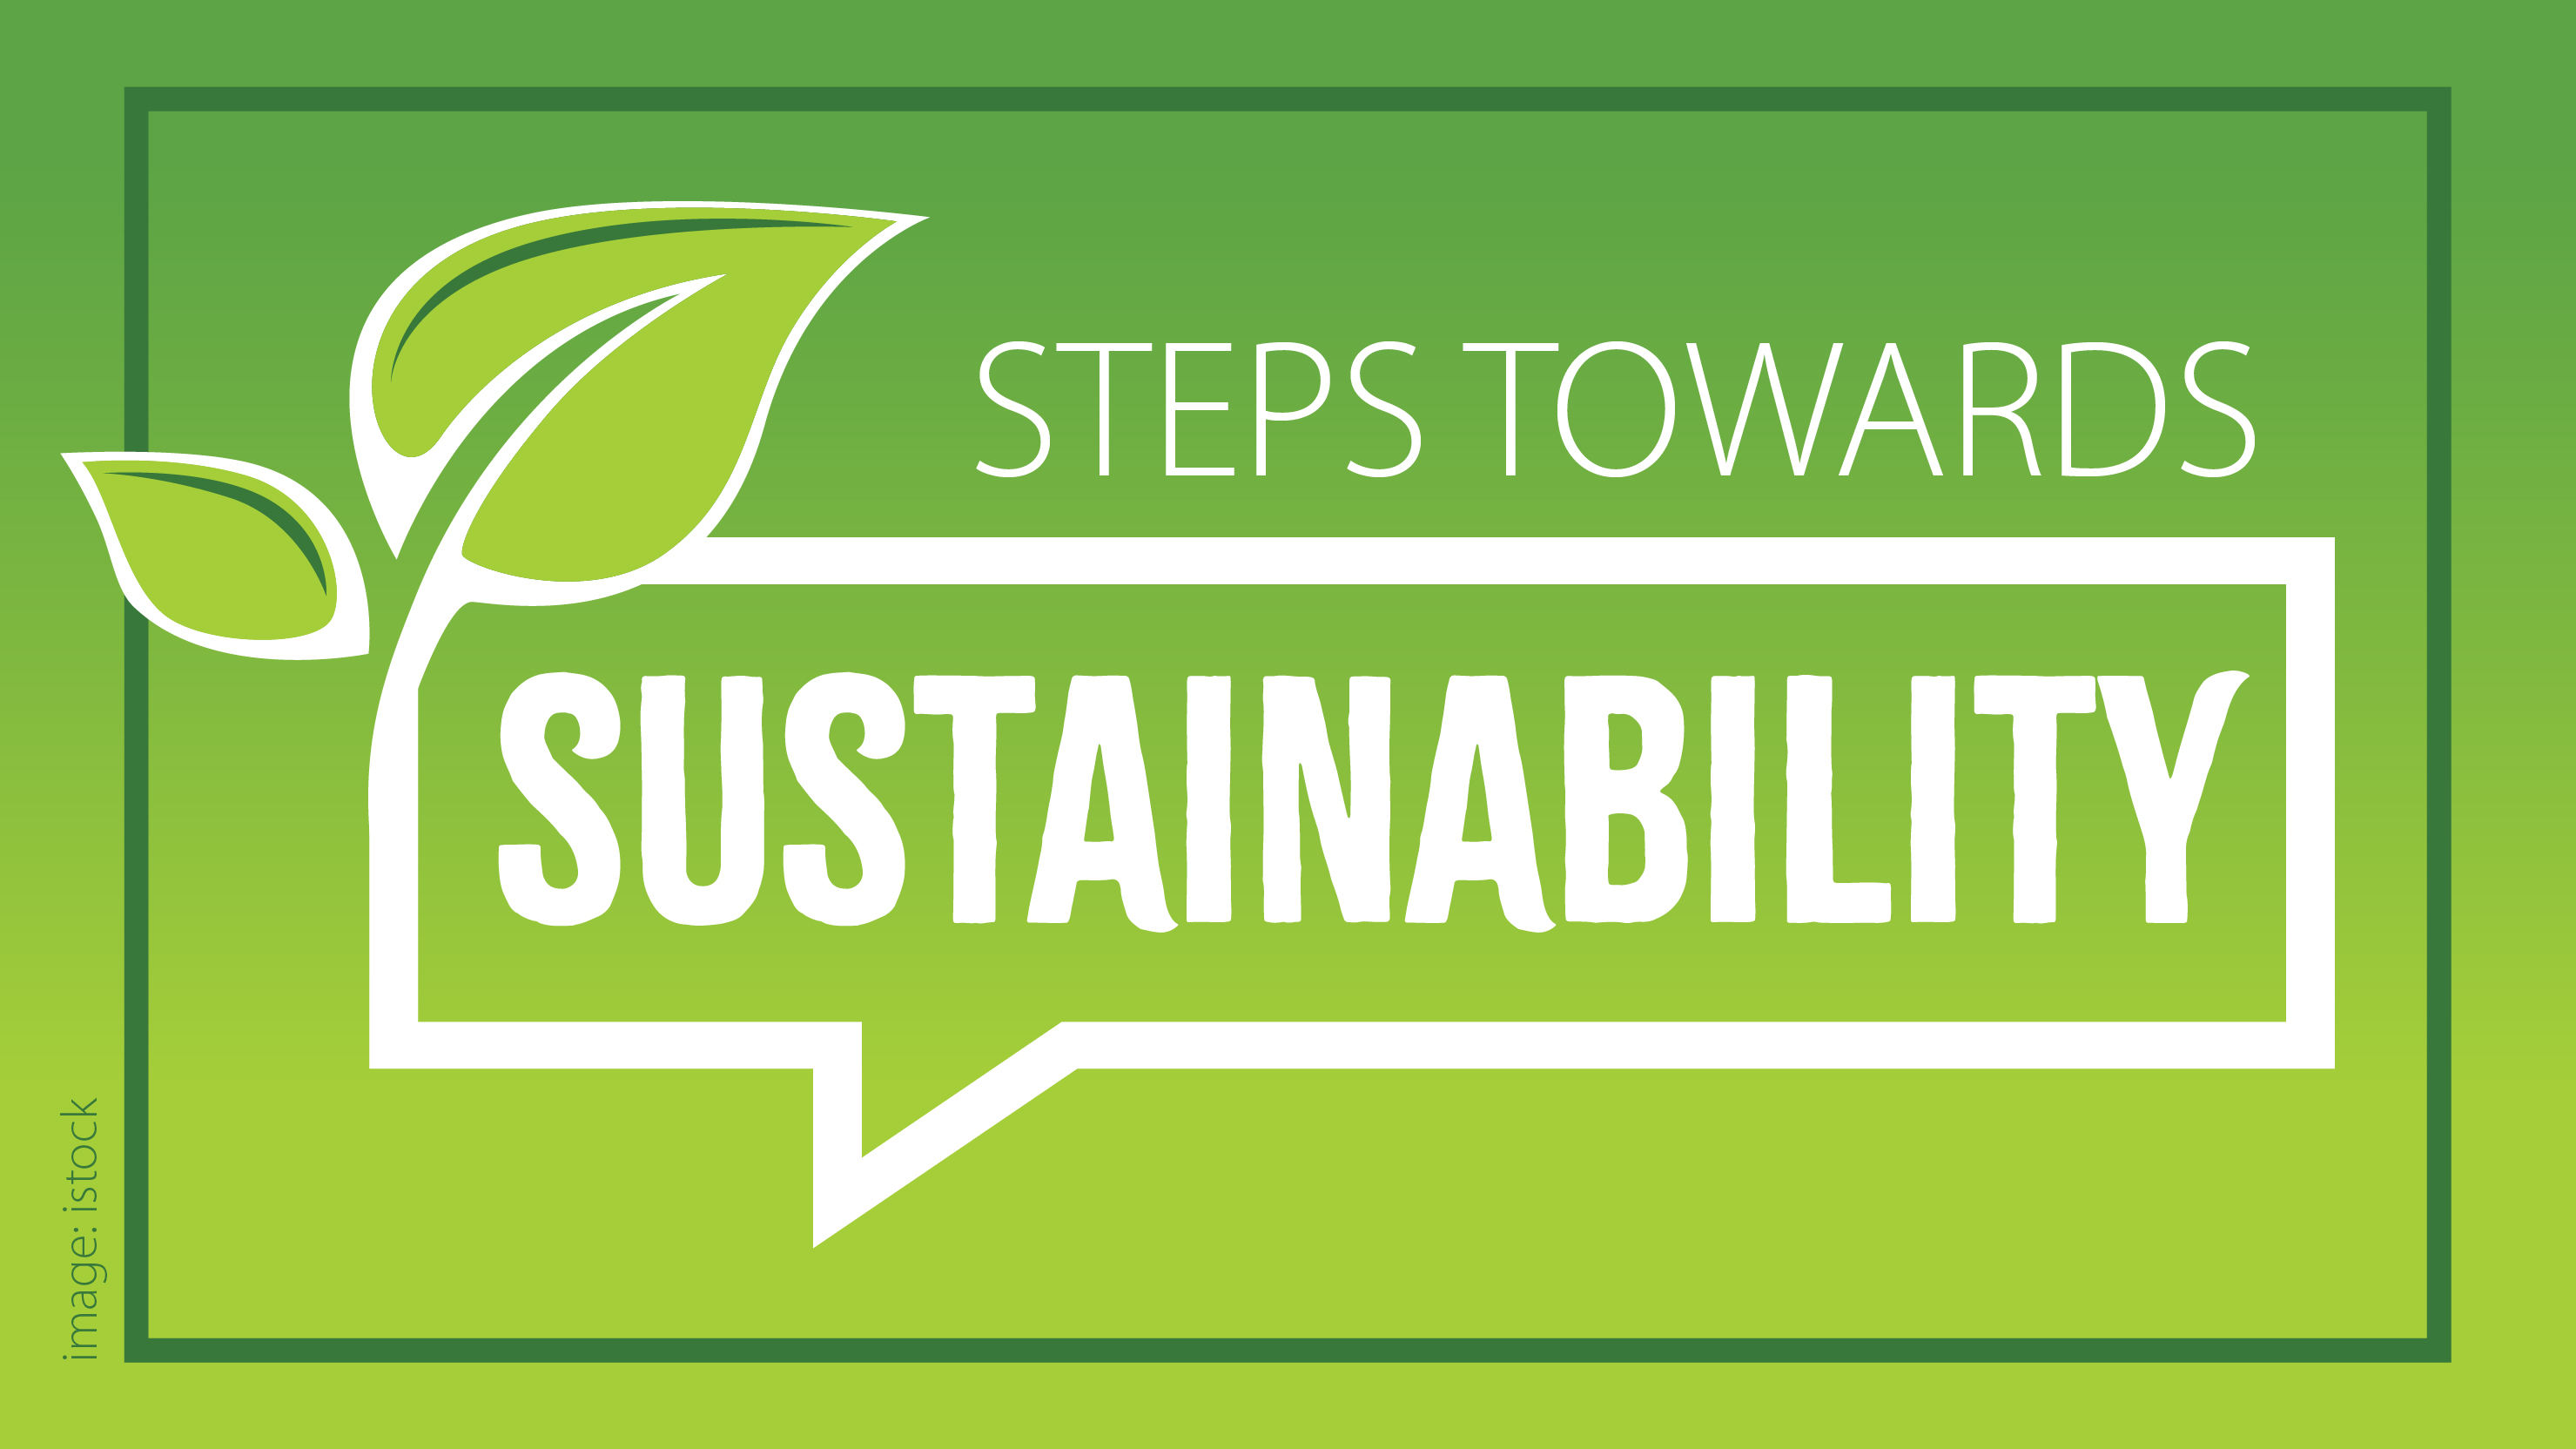 Steps towards sustainability